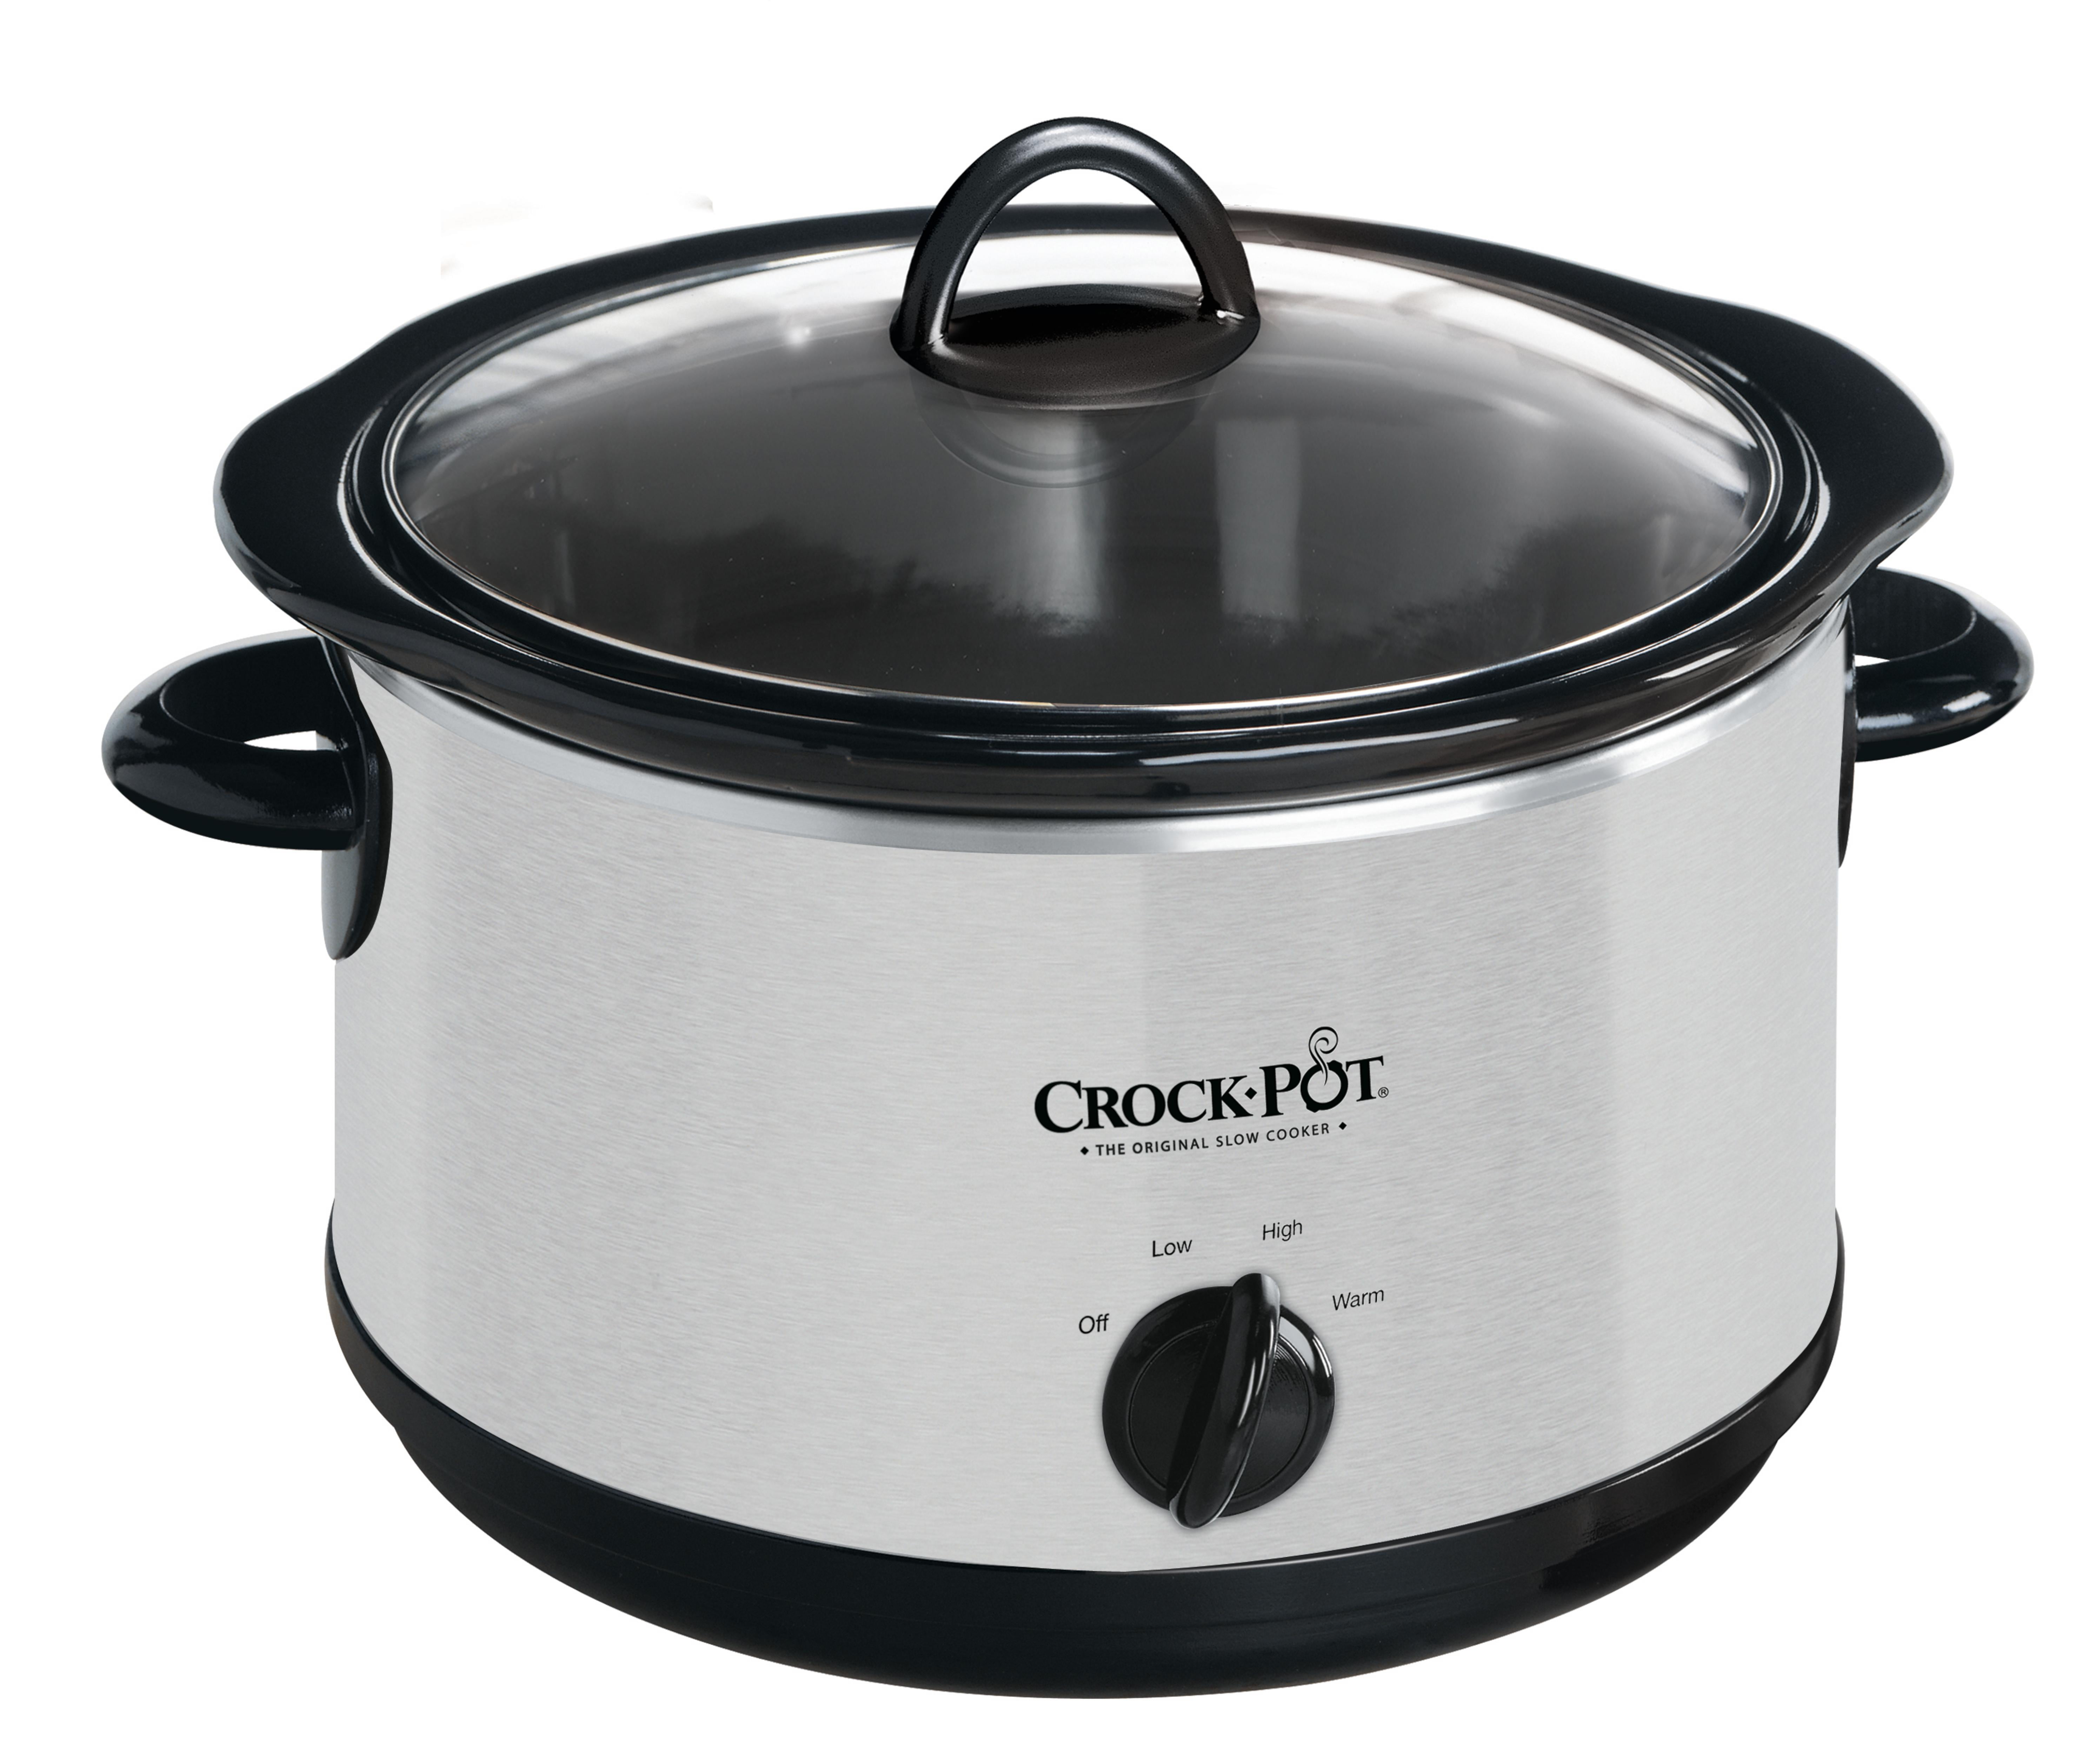 Crock-Pot Slow Cooker, 5-Quart, Stainless Steel - Walmart.com